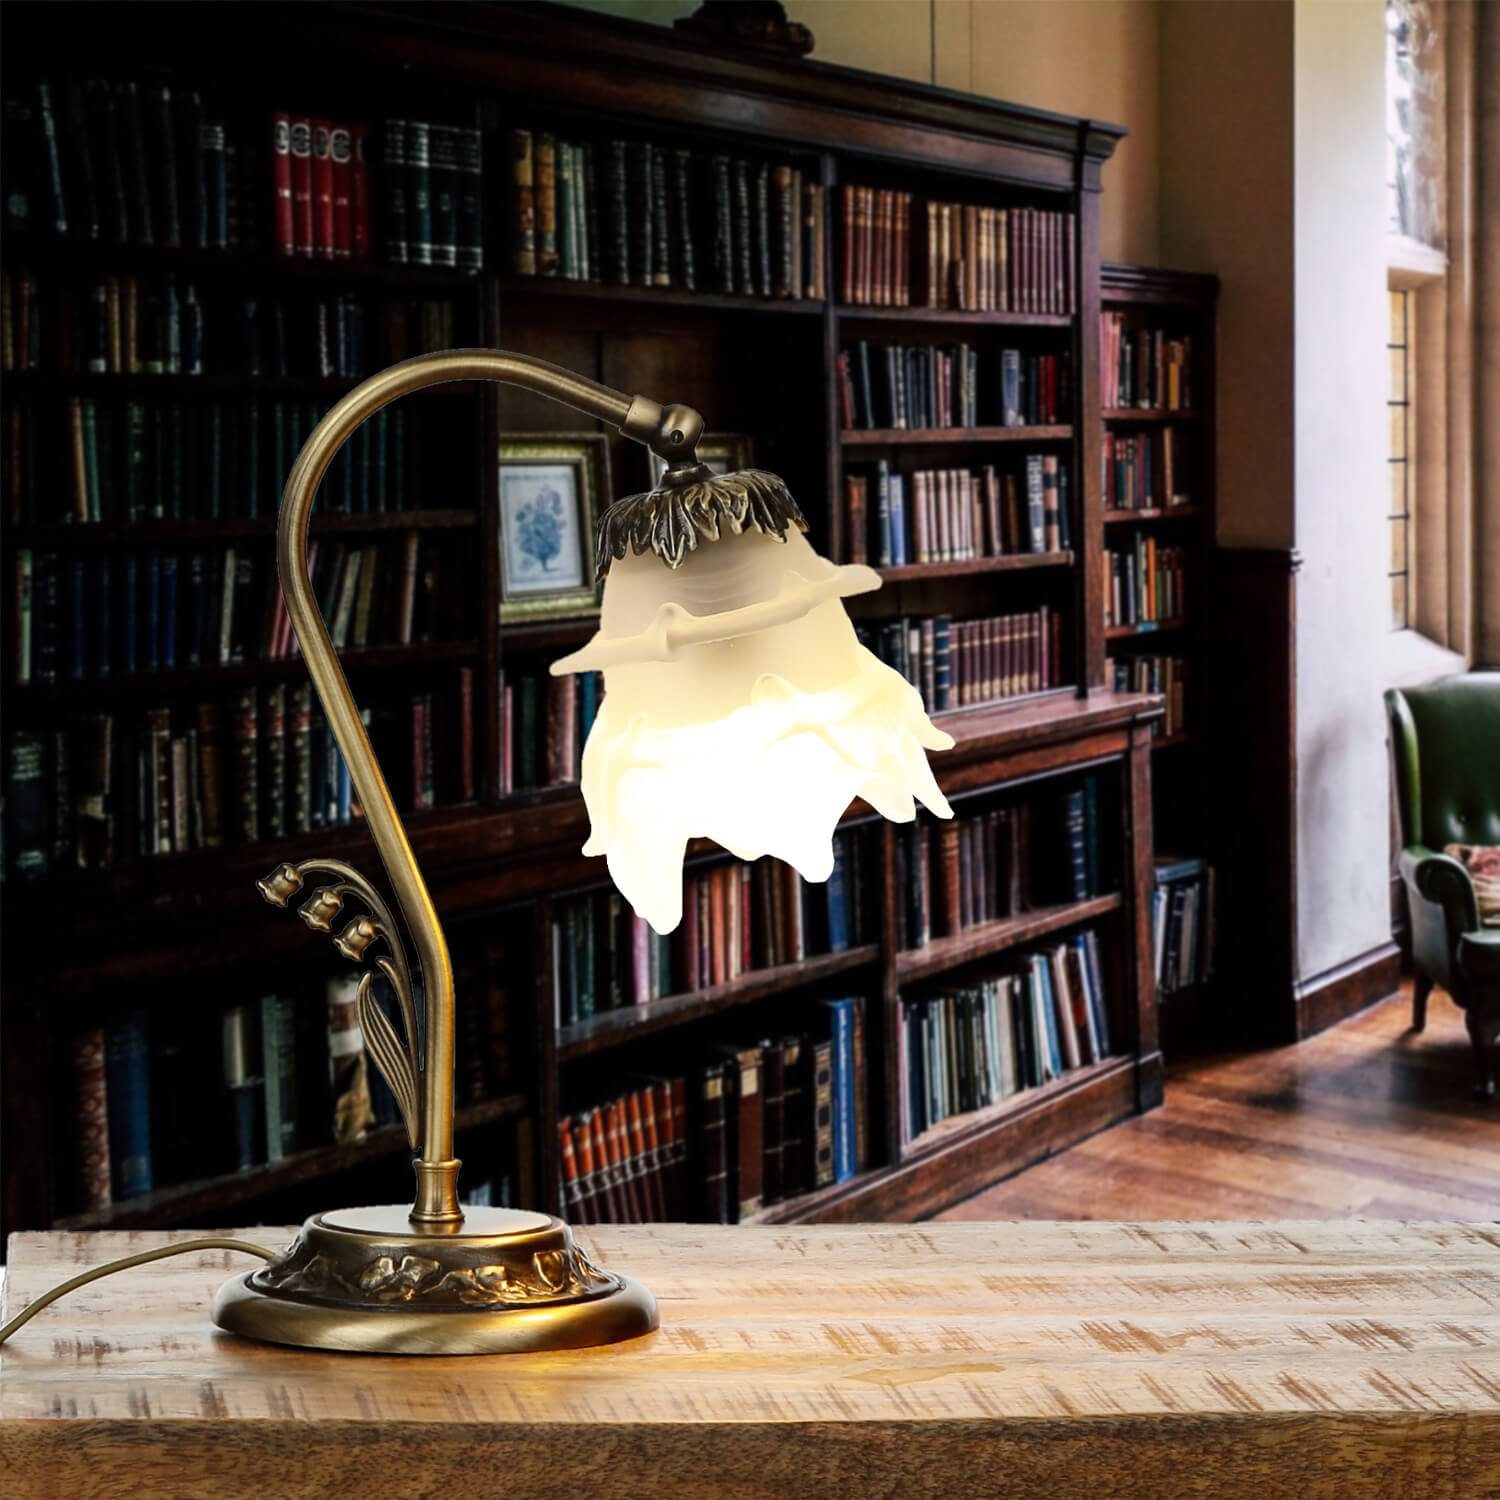 ohne Licht-Erlebnisse Leuchtmittel, Echt-Messing Nachttischlampe Floral Tischlampe TABLE in Bronze Wohnzimmer Schlafzimmer LAMP,